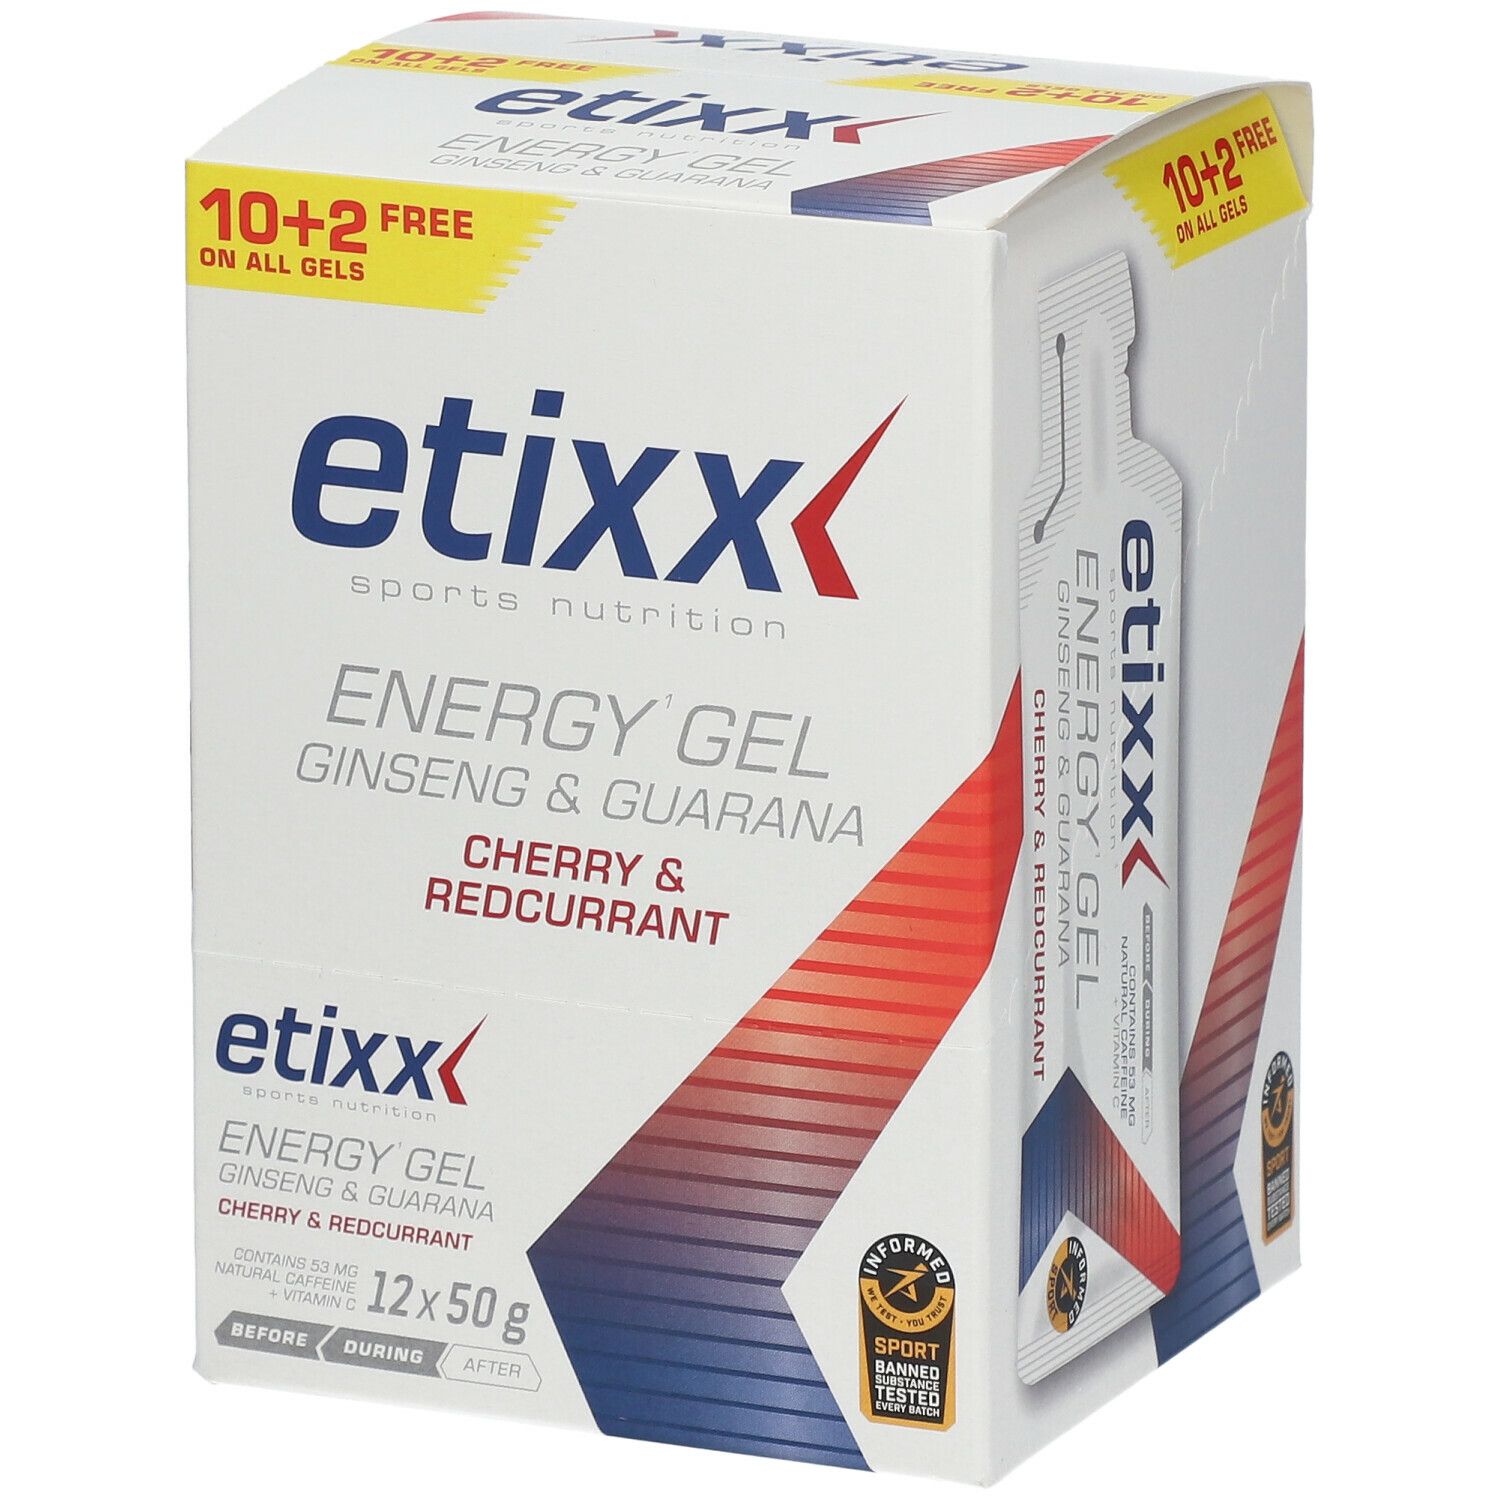 Etixx Ginseng & Guarana Energy Gel